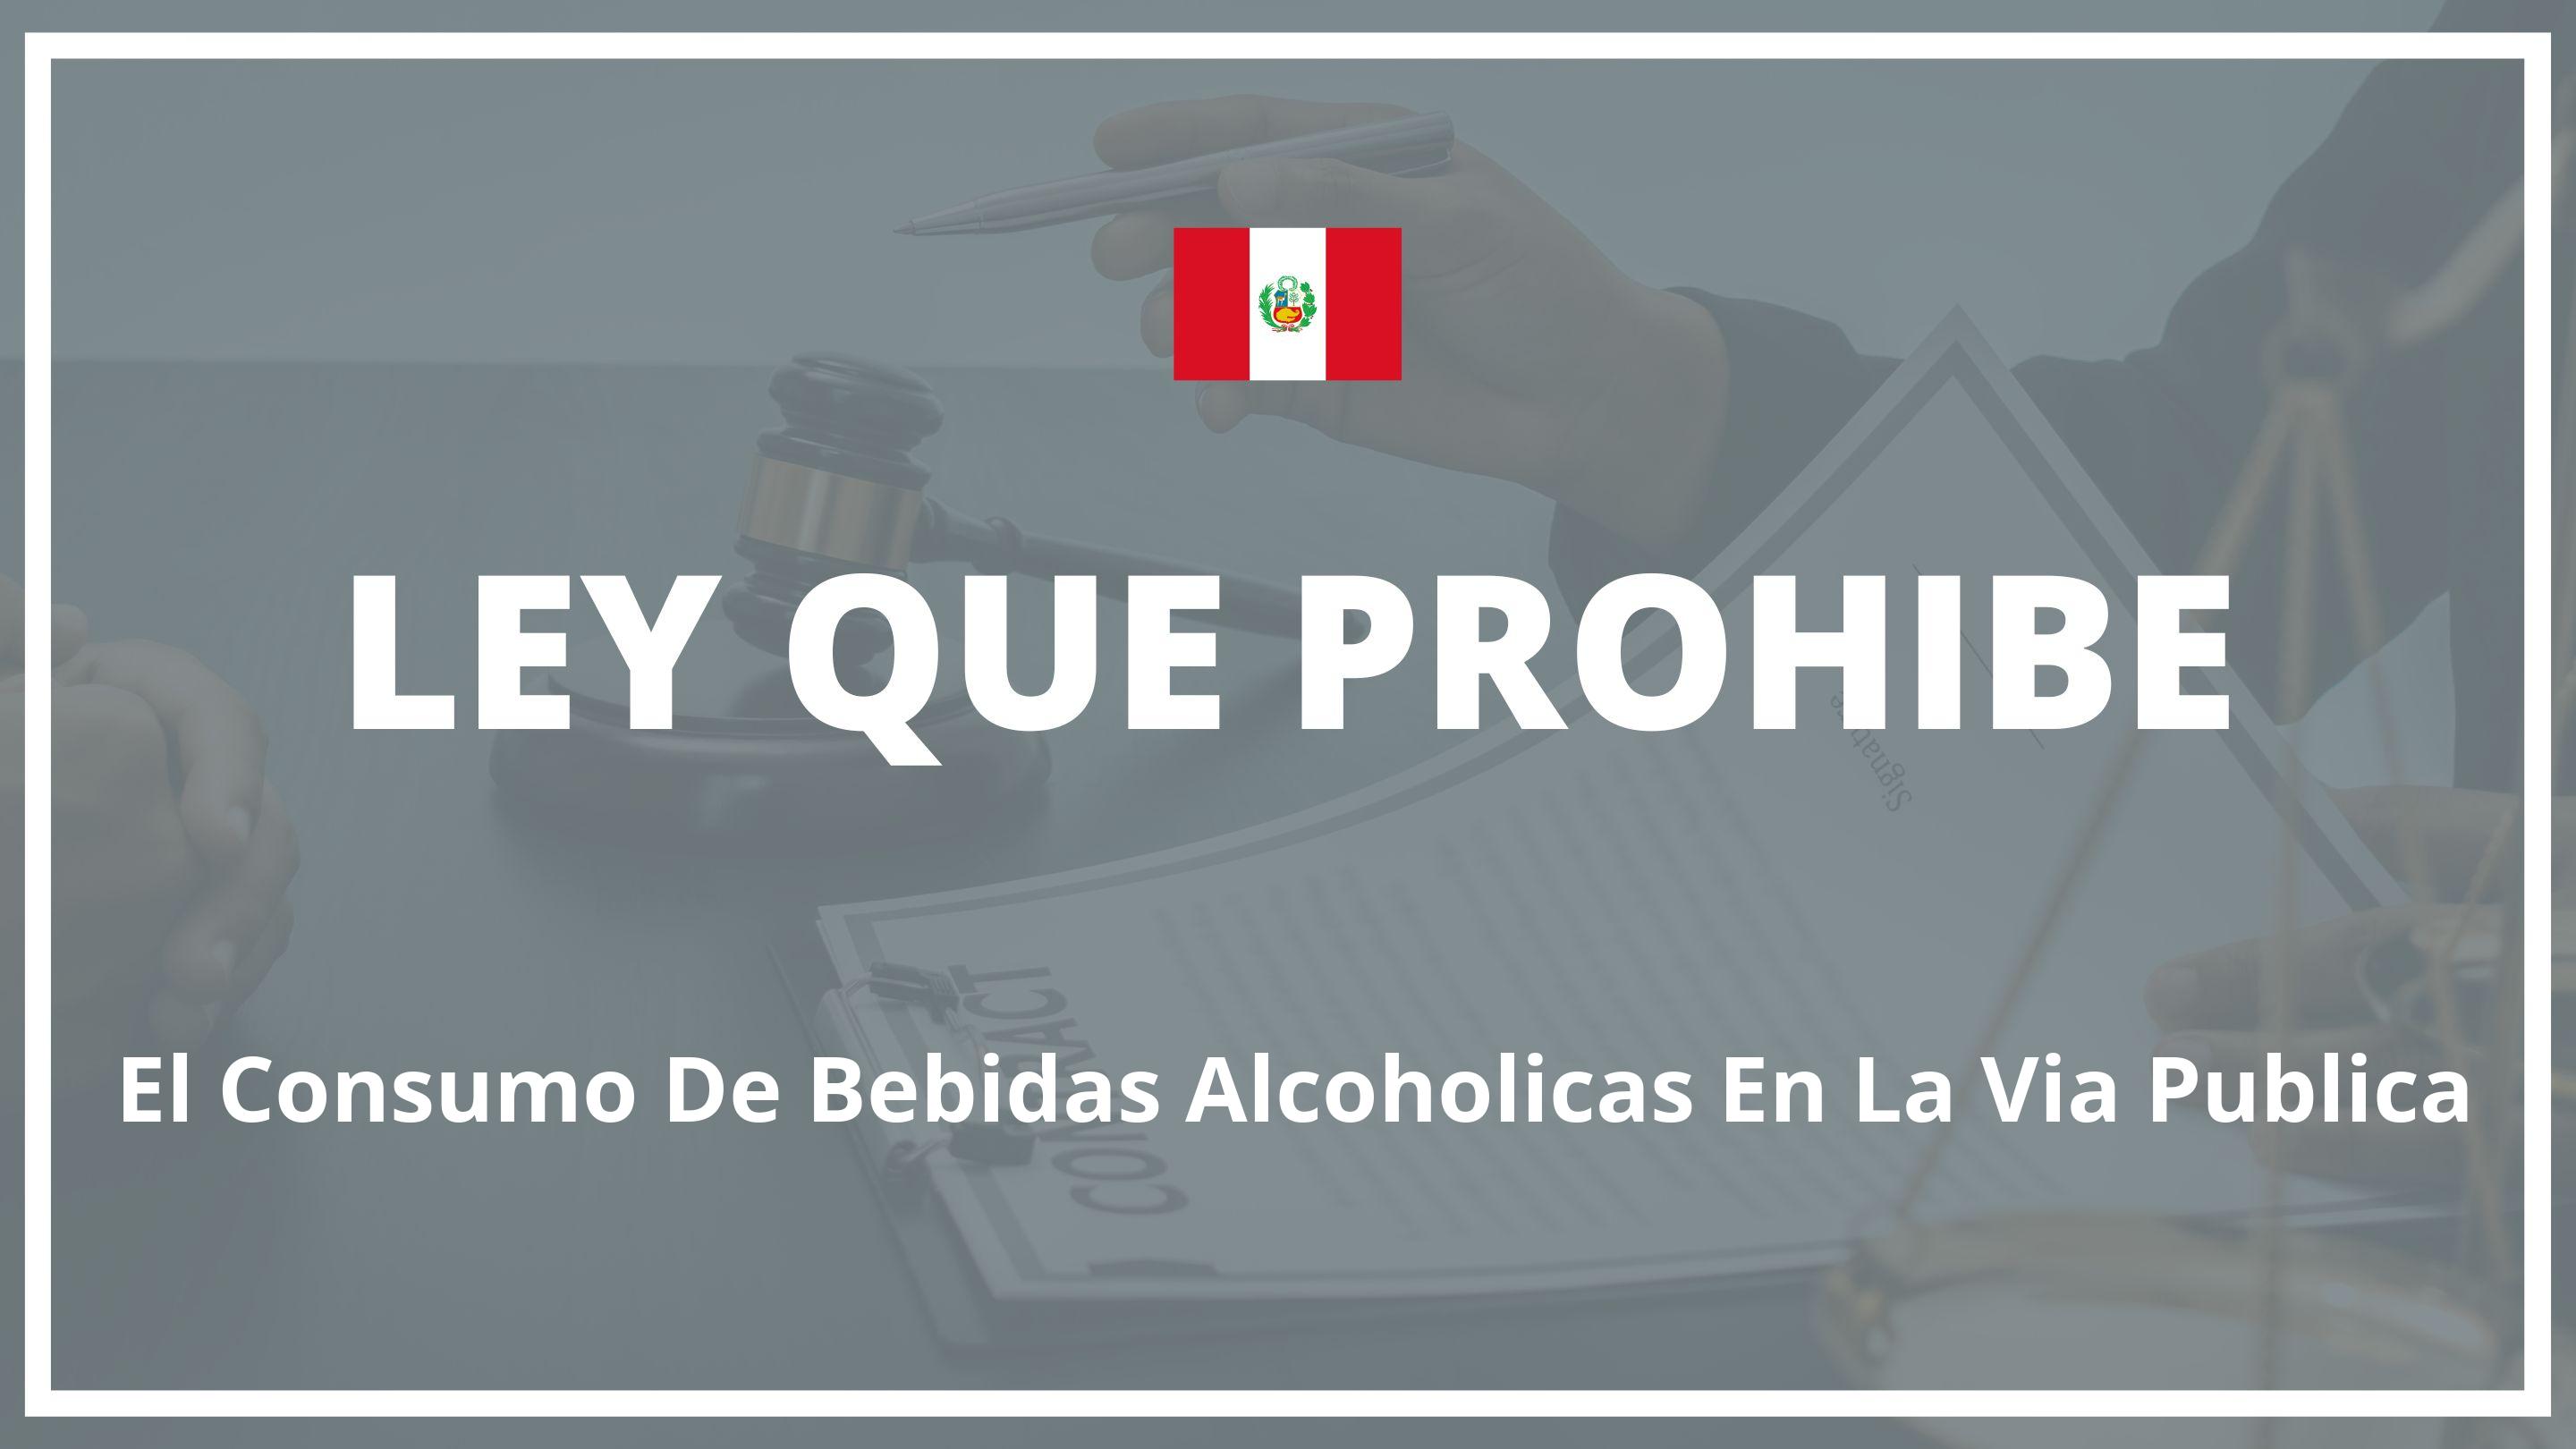 Ley que prohibe el consumo de bebidas alcoholicas en la via publica Peru